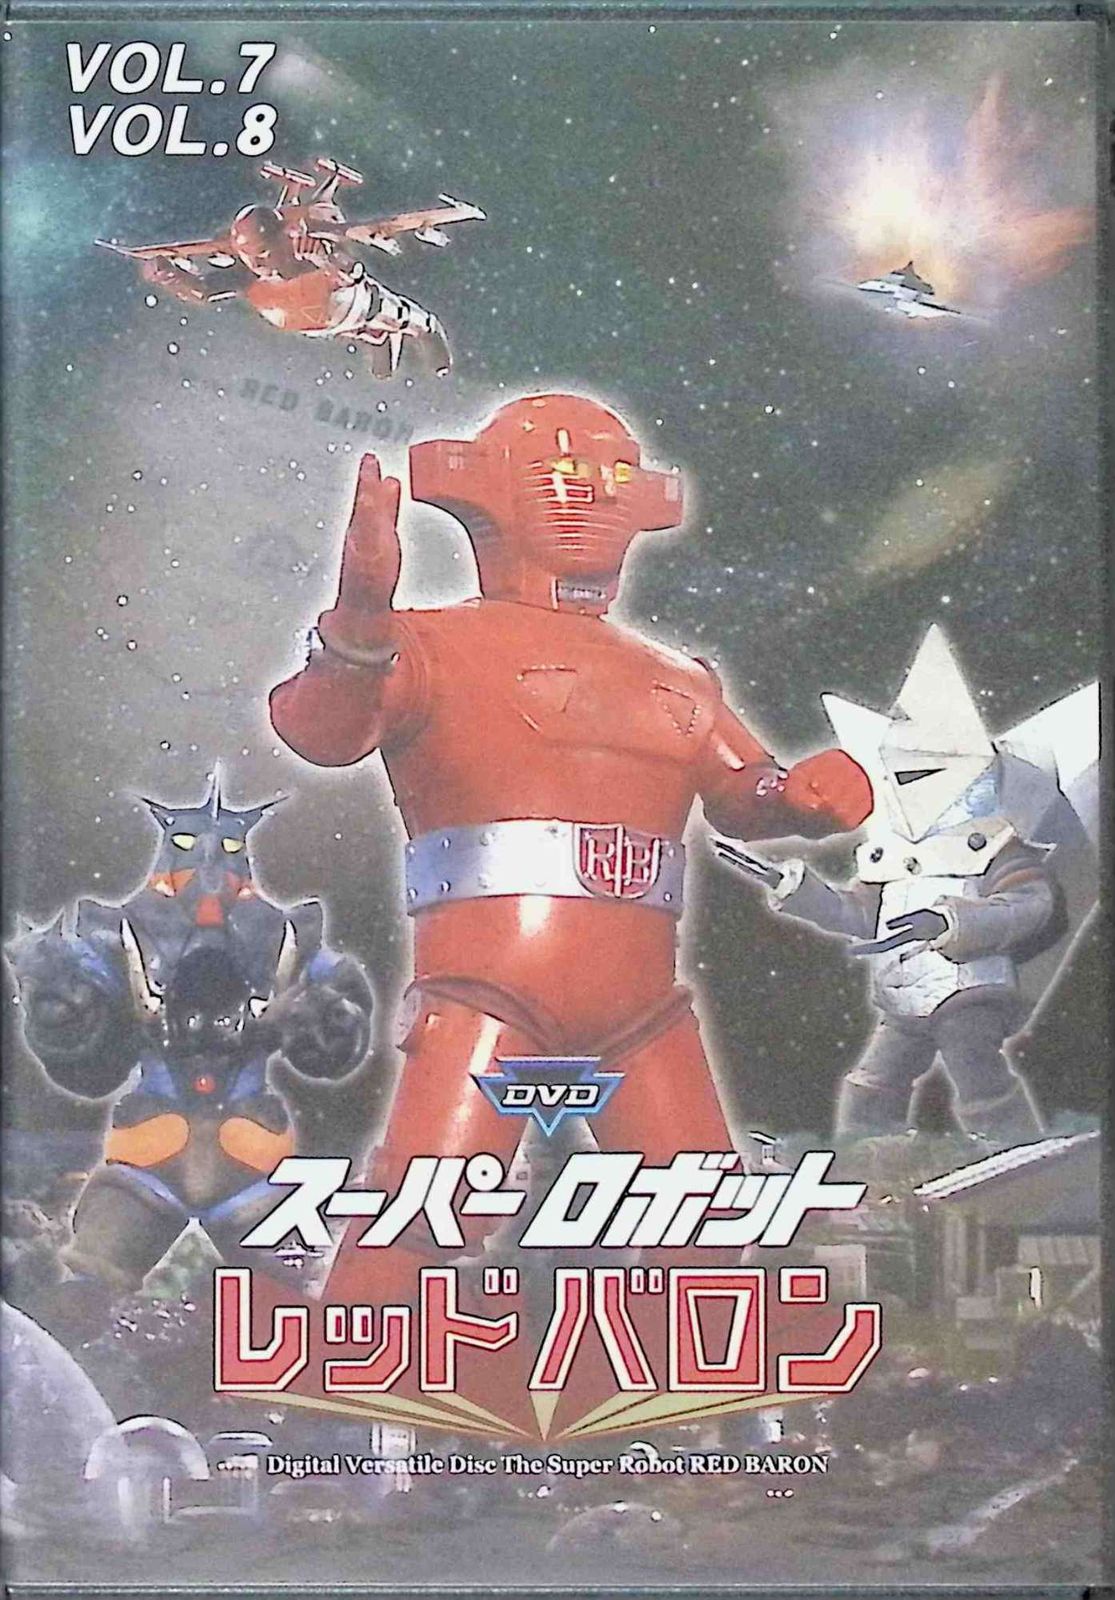 スーパーロボット レッドバロン vol.1-10 (DVD全10巻・5本セット 